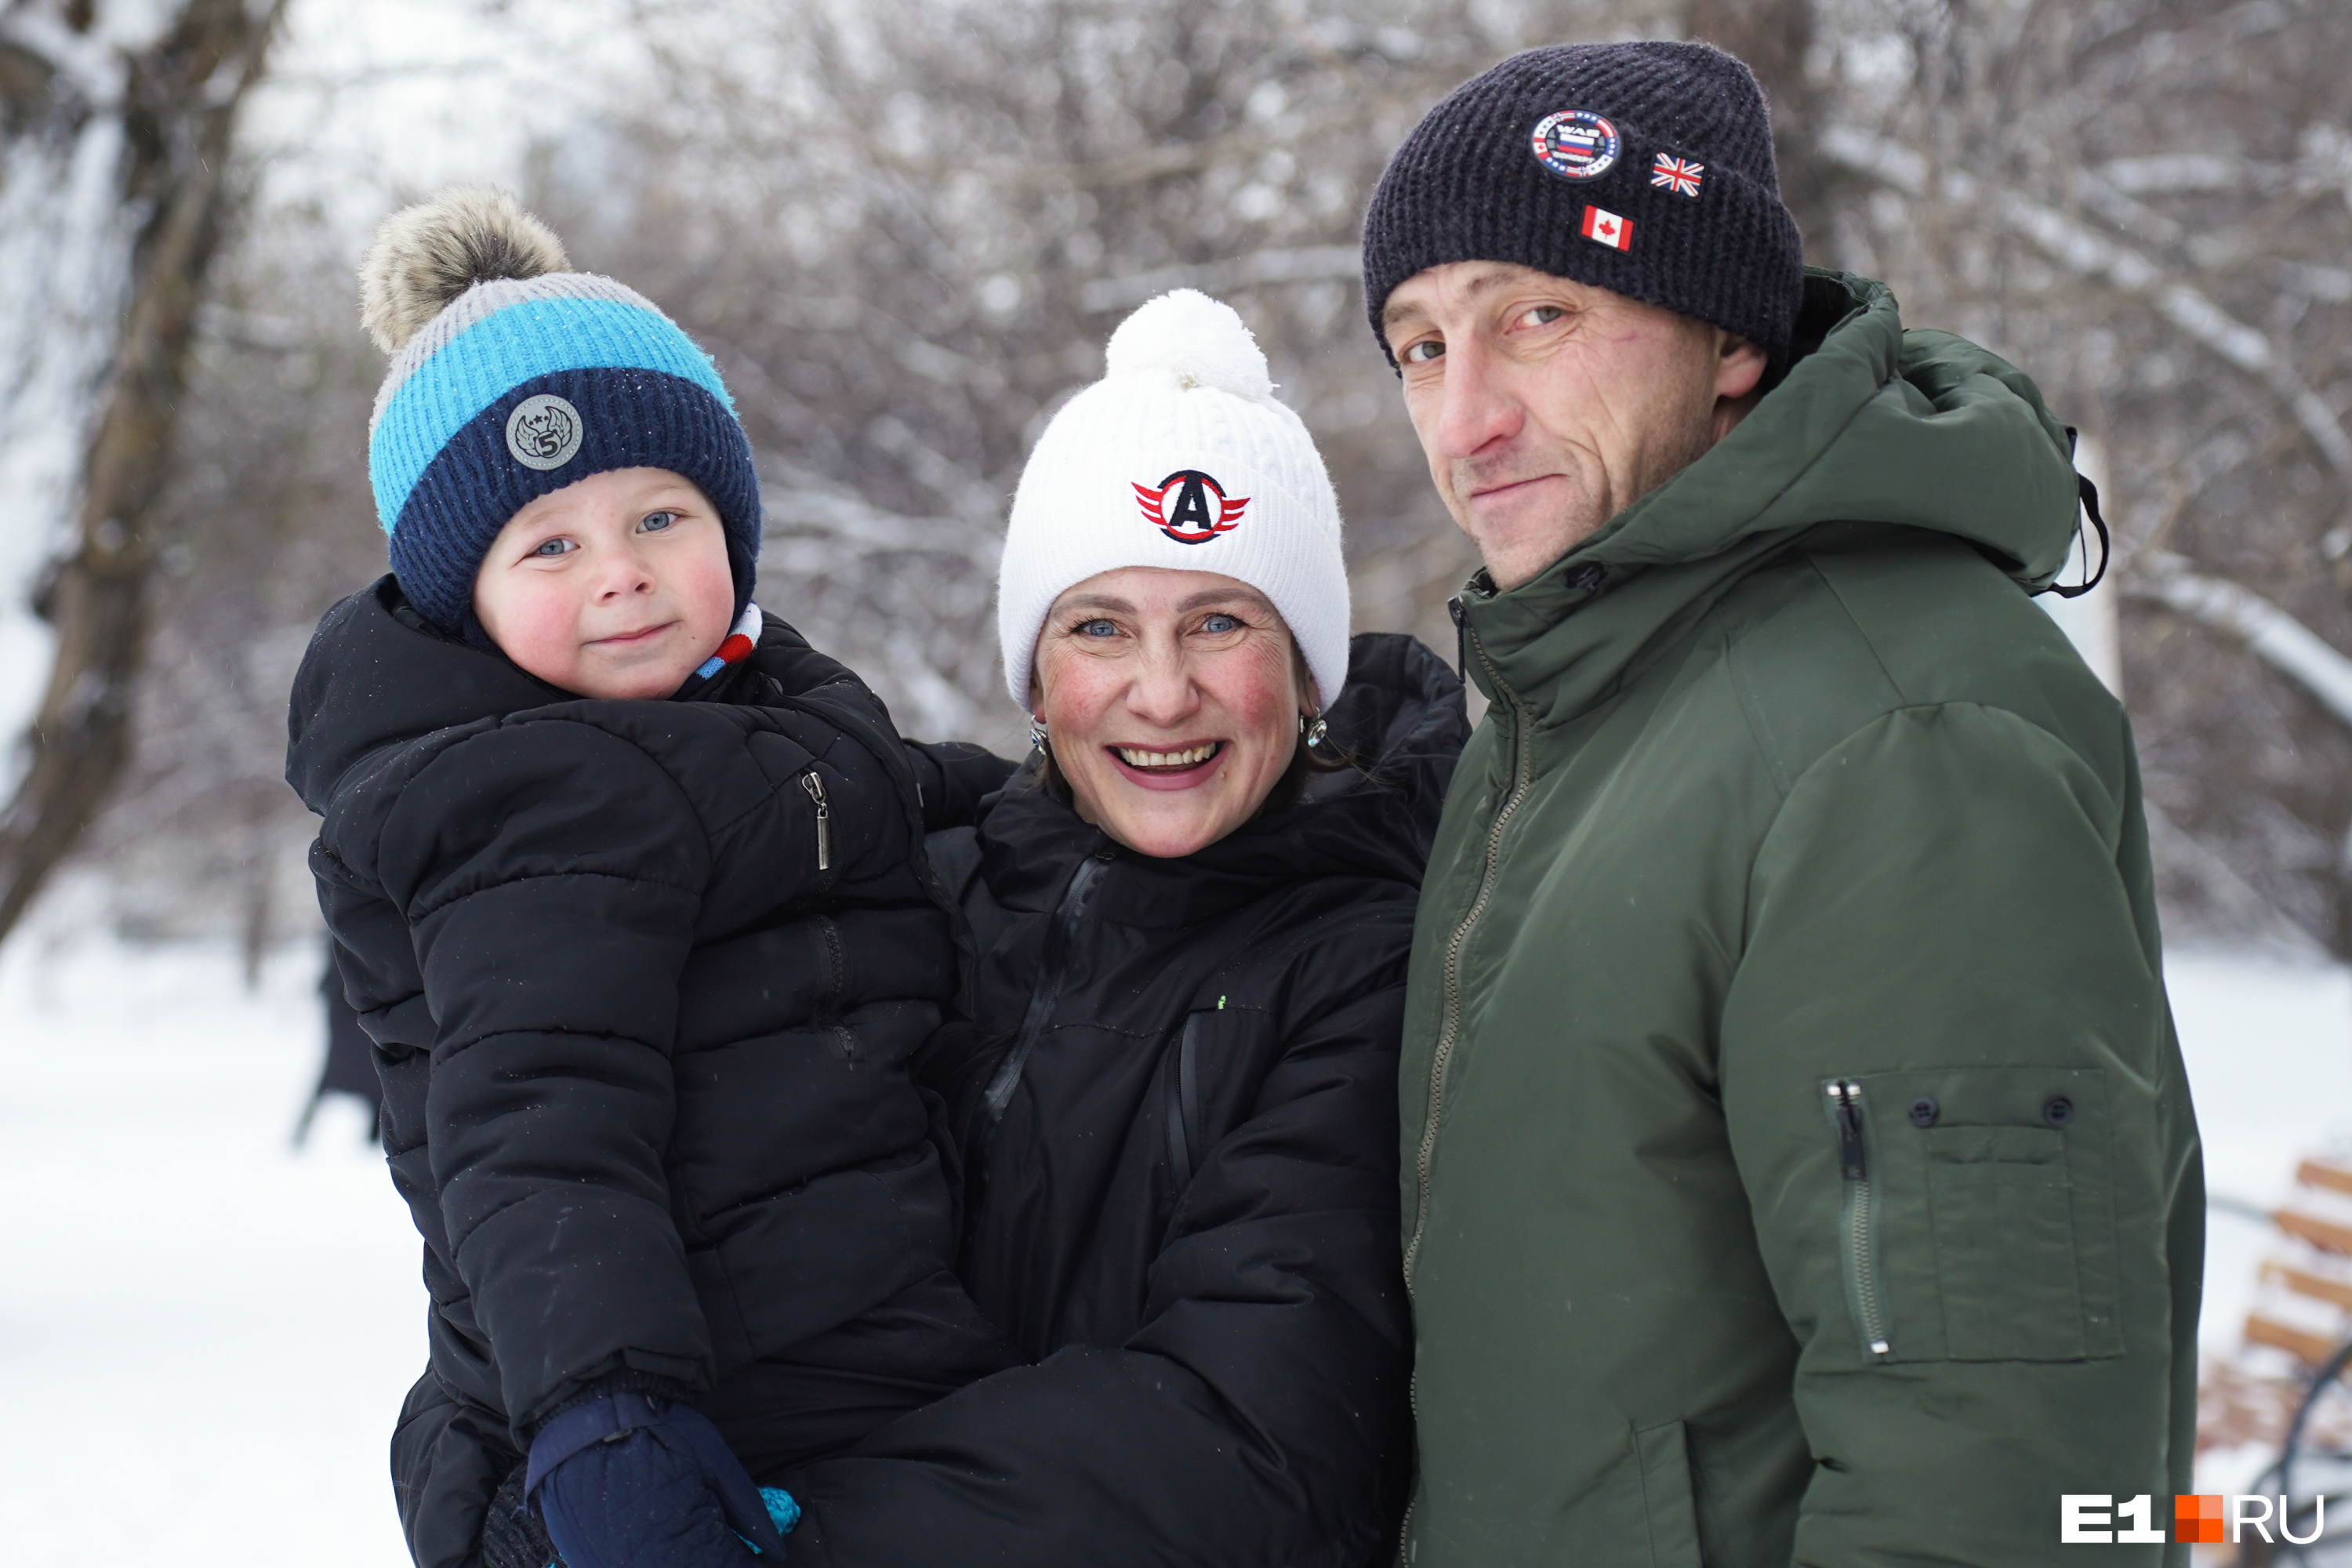 Артем, Наталья и их сын Иван. Оба родителя с ВИЧ, но их ребенок здоров